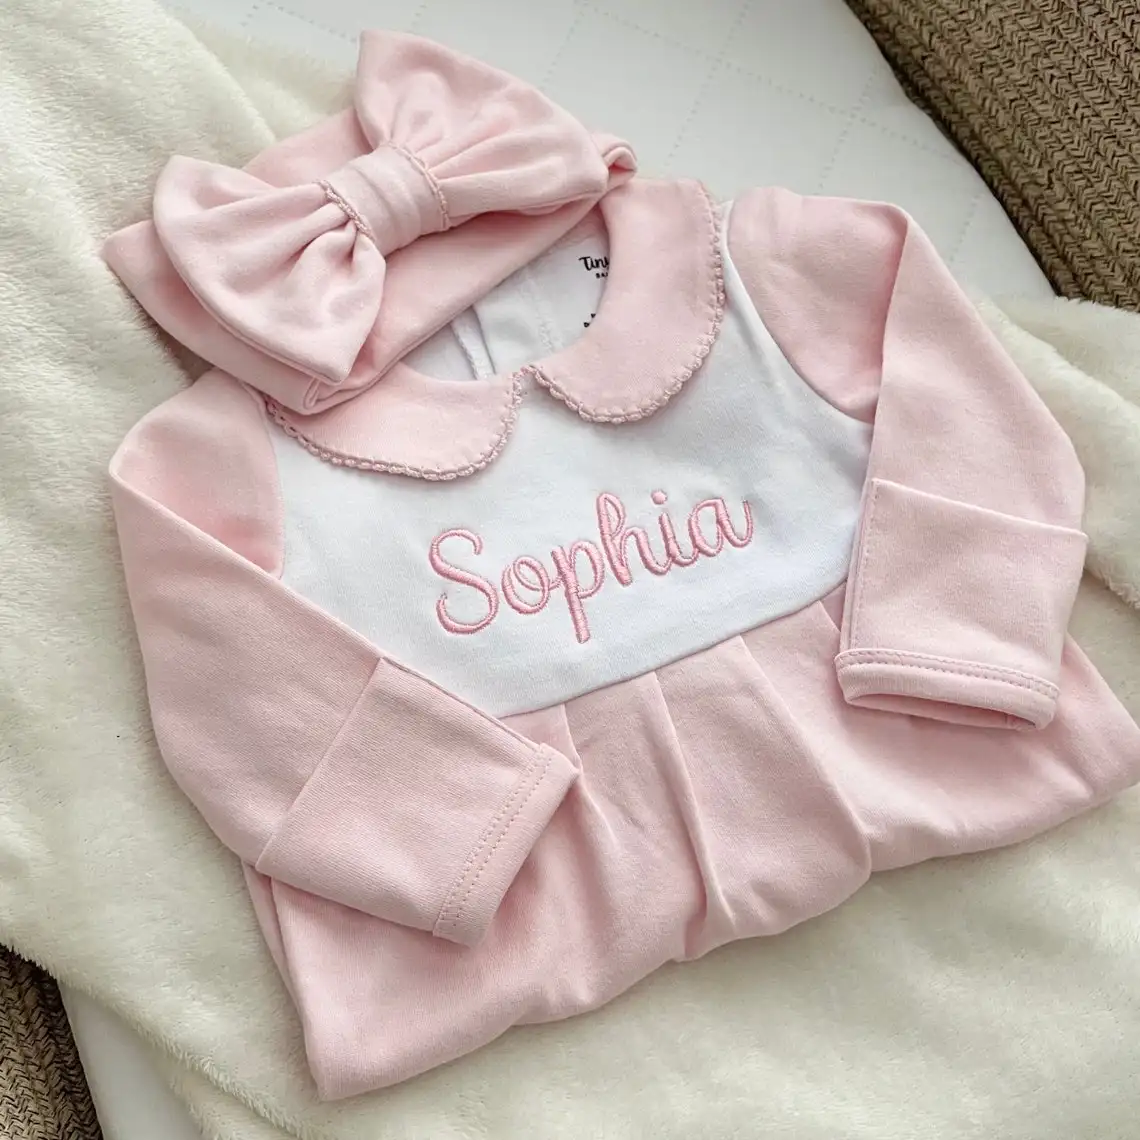 Completo per bebè personalizzato pagliaccetto per bebè in cotone organico Set pigiama per bebè da casa all'ingrosso